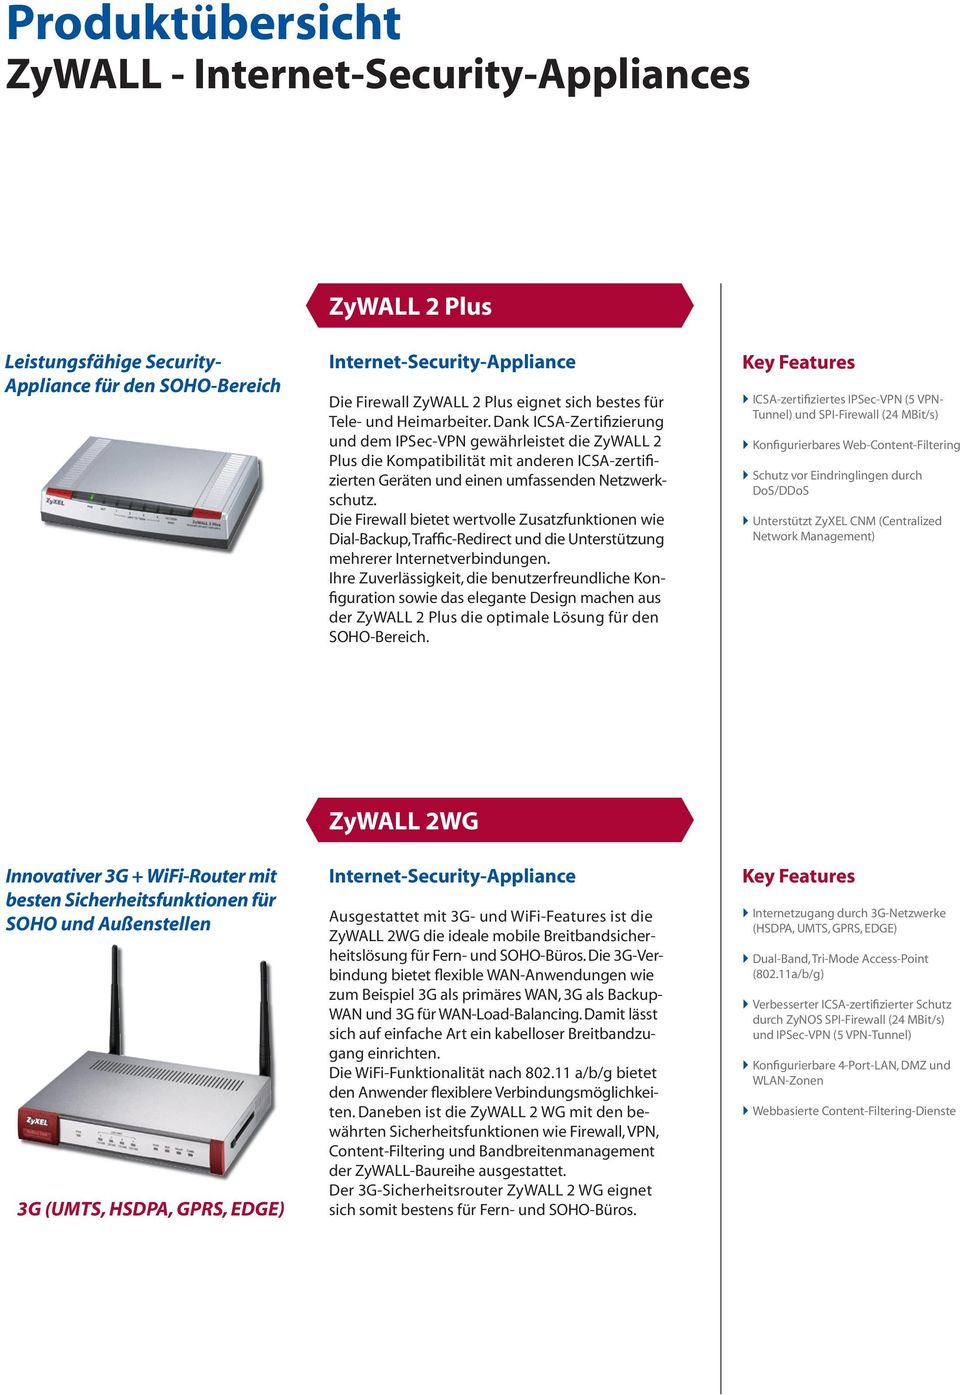 Die Firewall bietet wertvolle Zusatzfunktionen wie DialBackup, TrafficRedirect und die Unterstützung mehrerer Internetverbindungen.